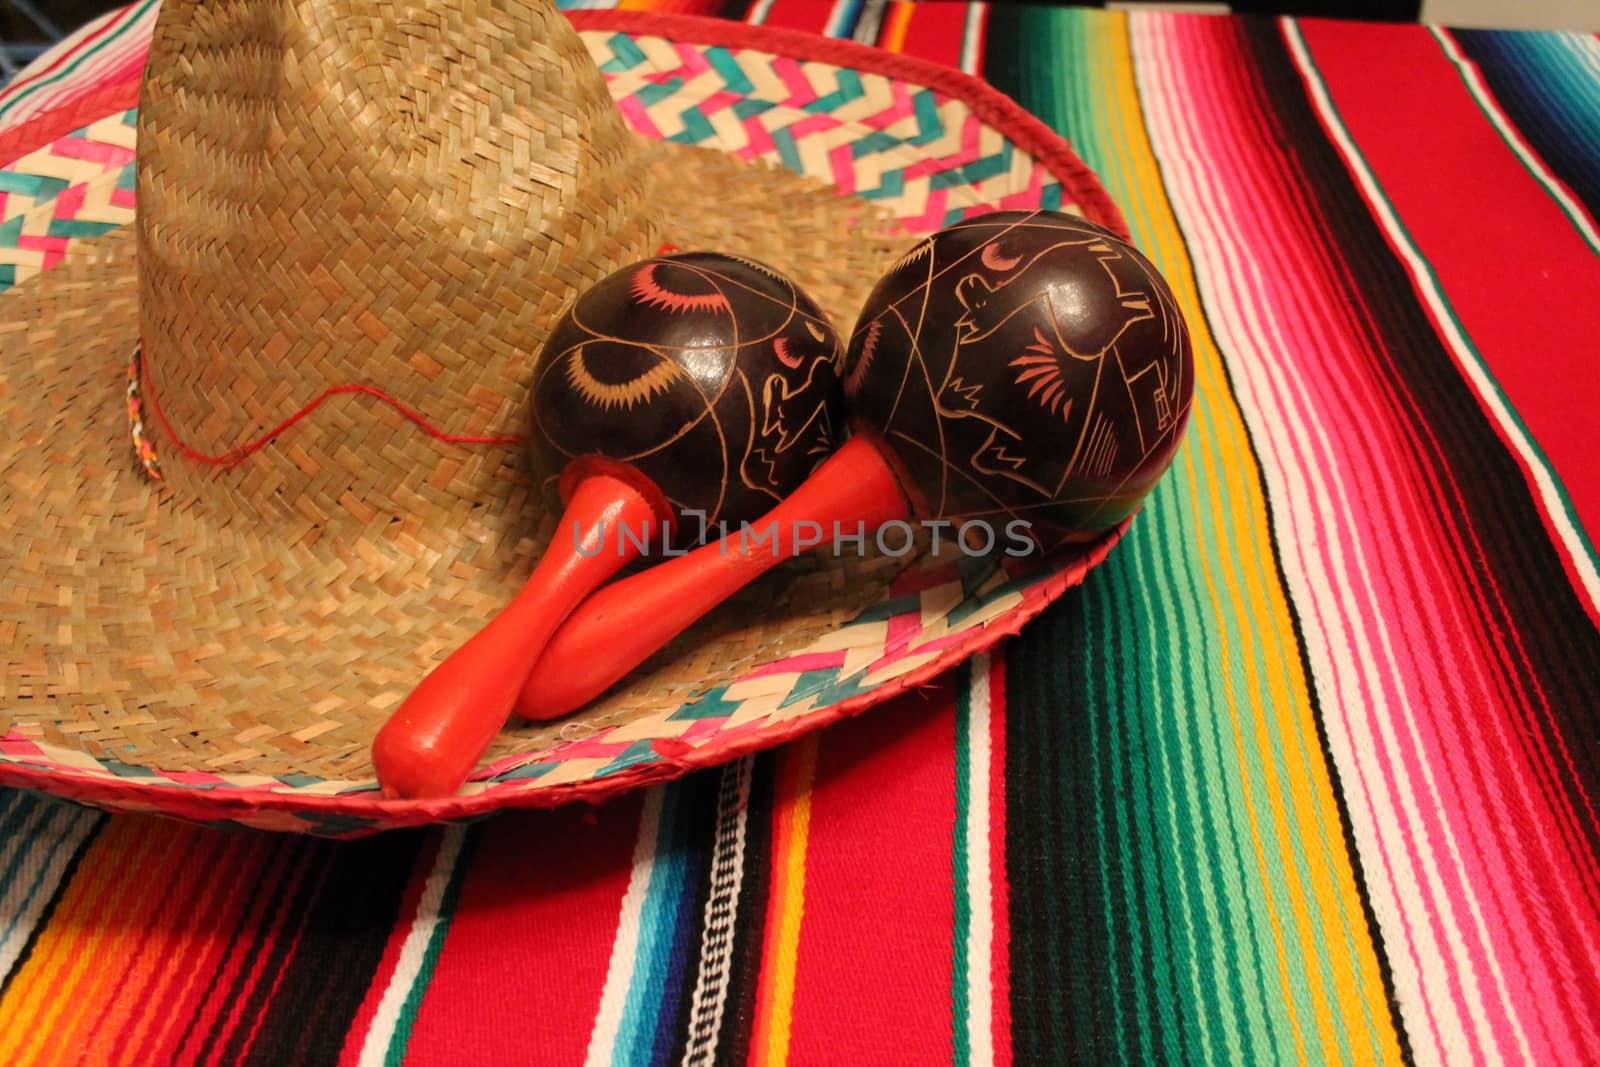 Mexico poncho sombrero maracas background fiesta cinco de mayo decoration bunting  by cheekylorns